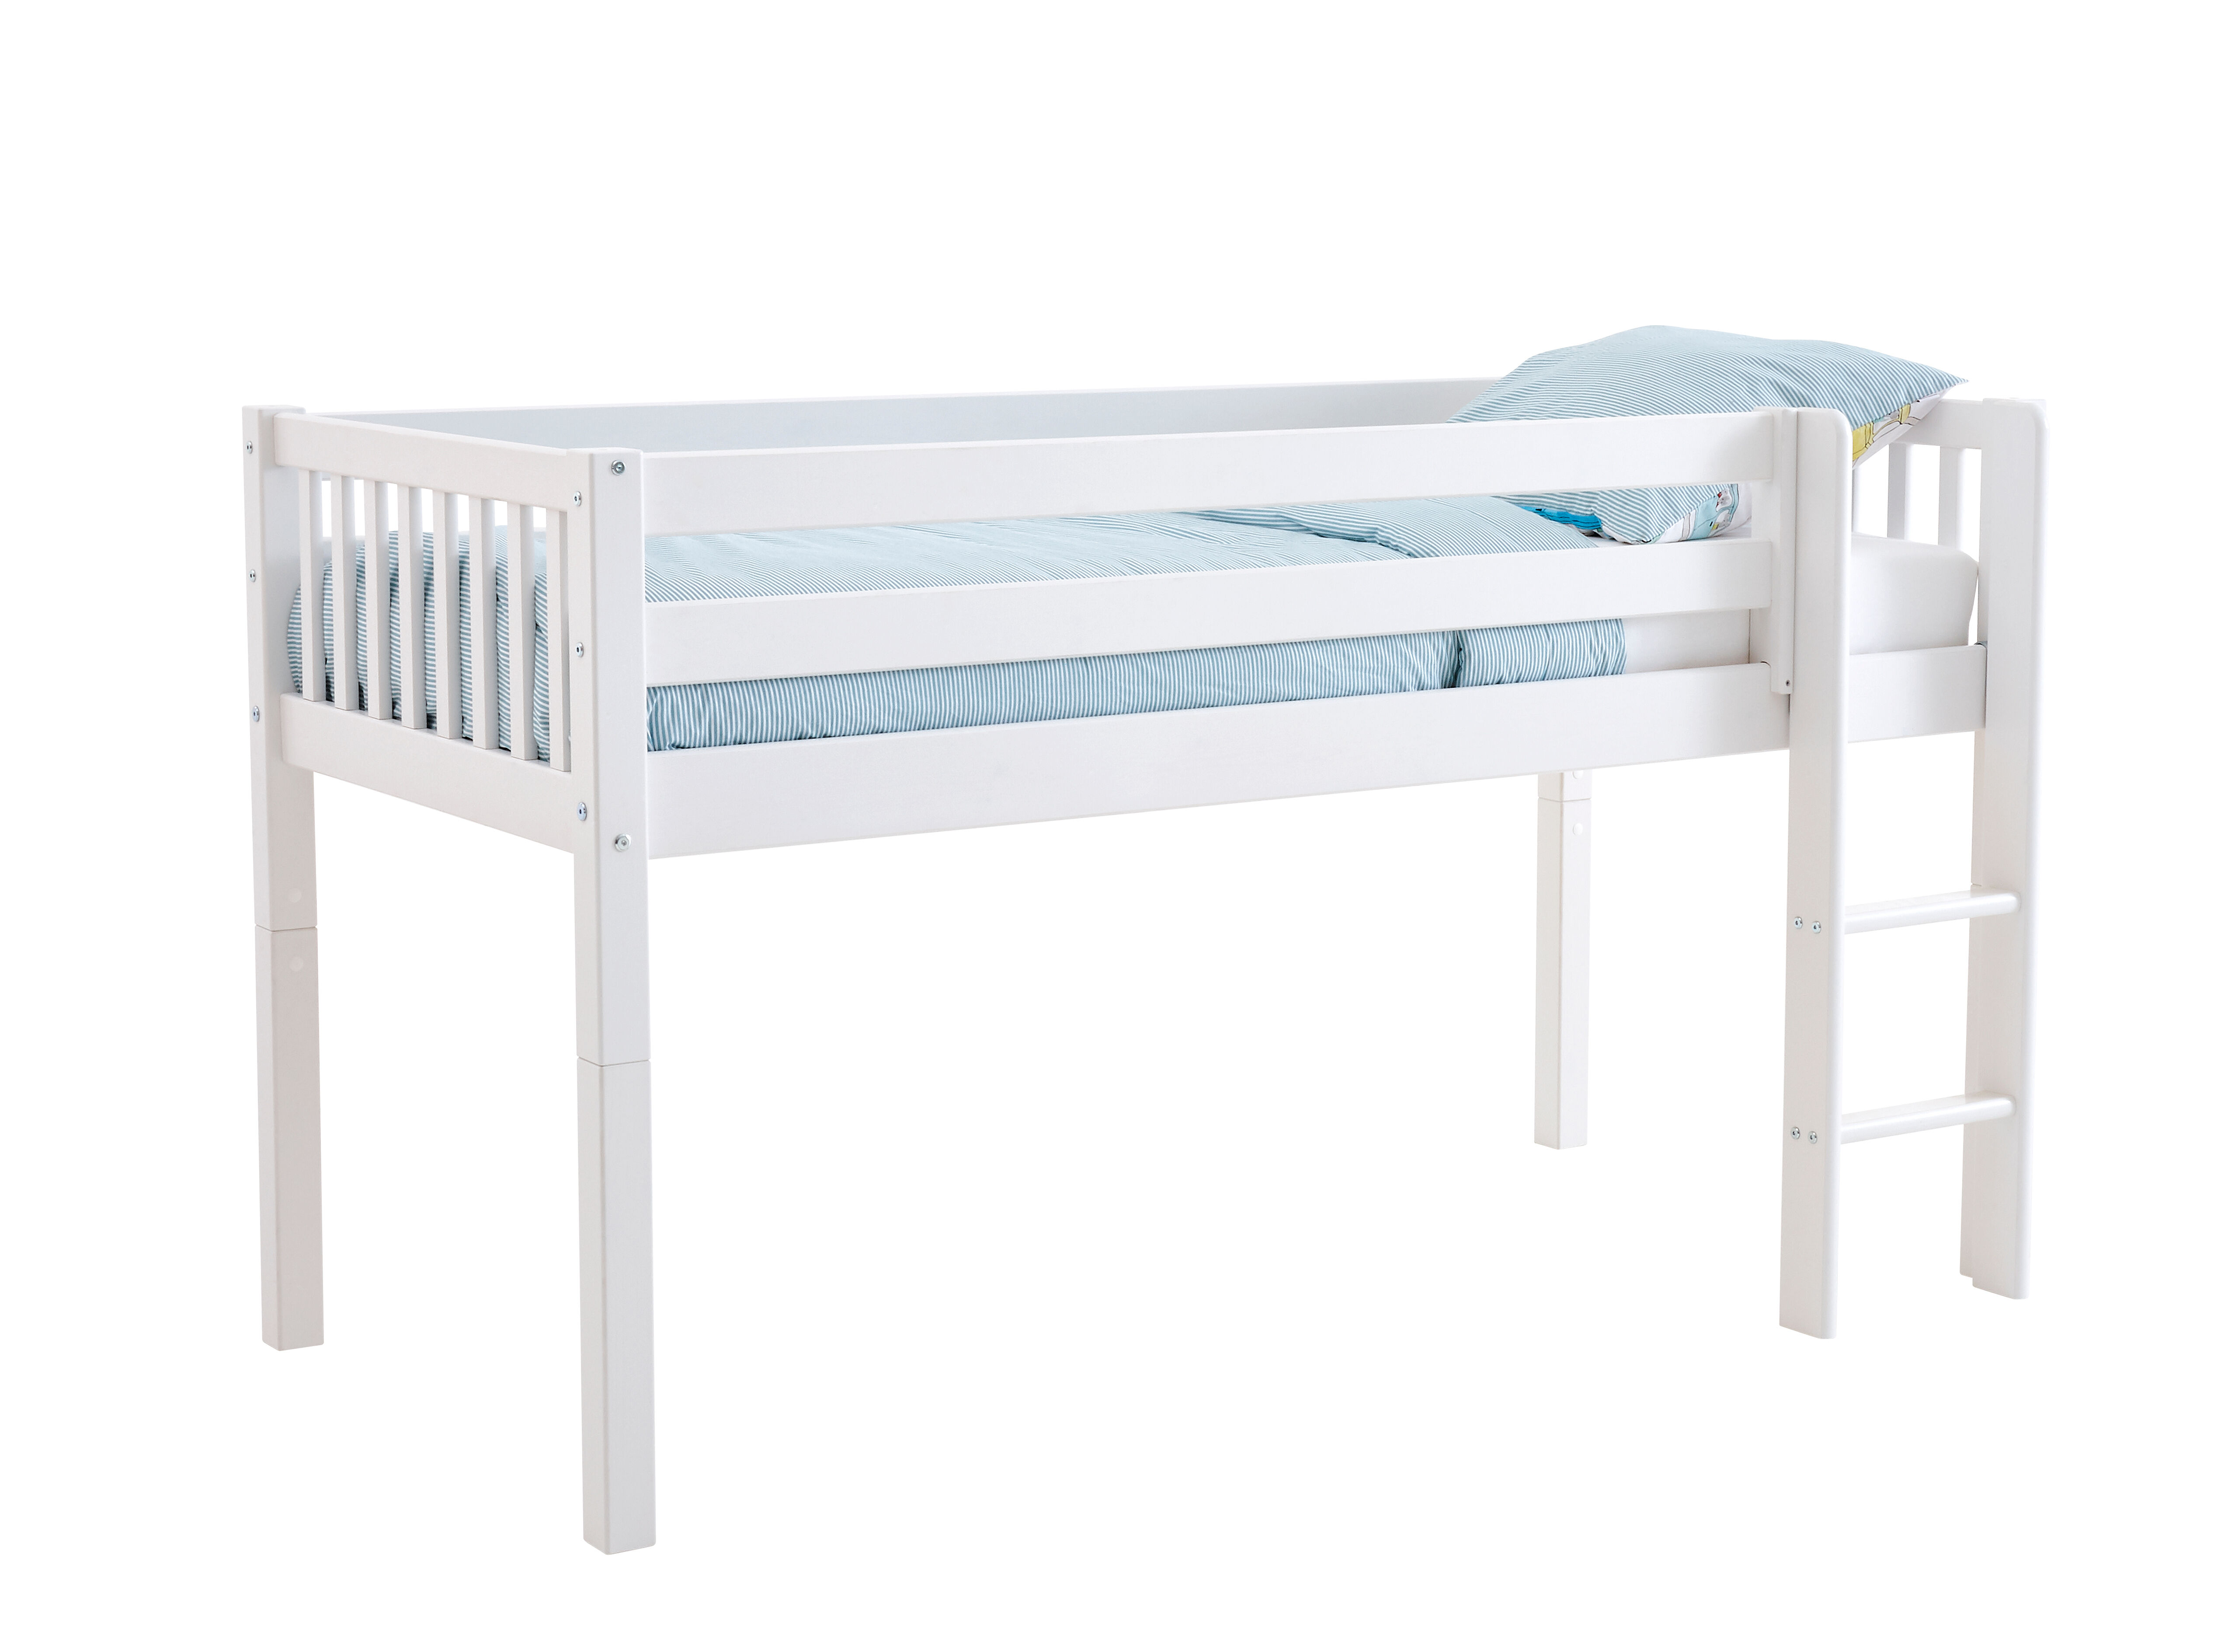 Flexa Basic Nordic barneseng halvhøy seng 90x200 cm, med sprosse, hvit.